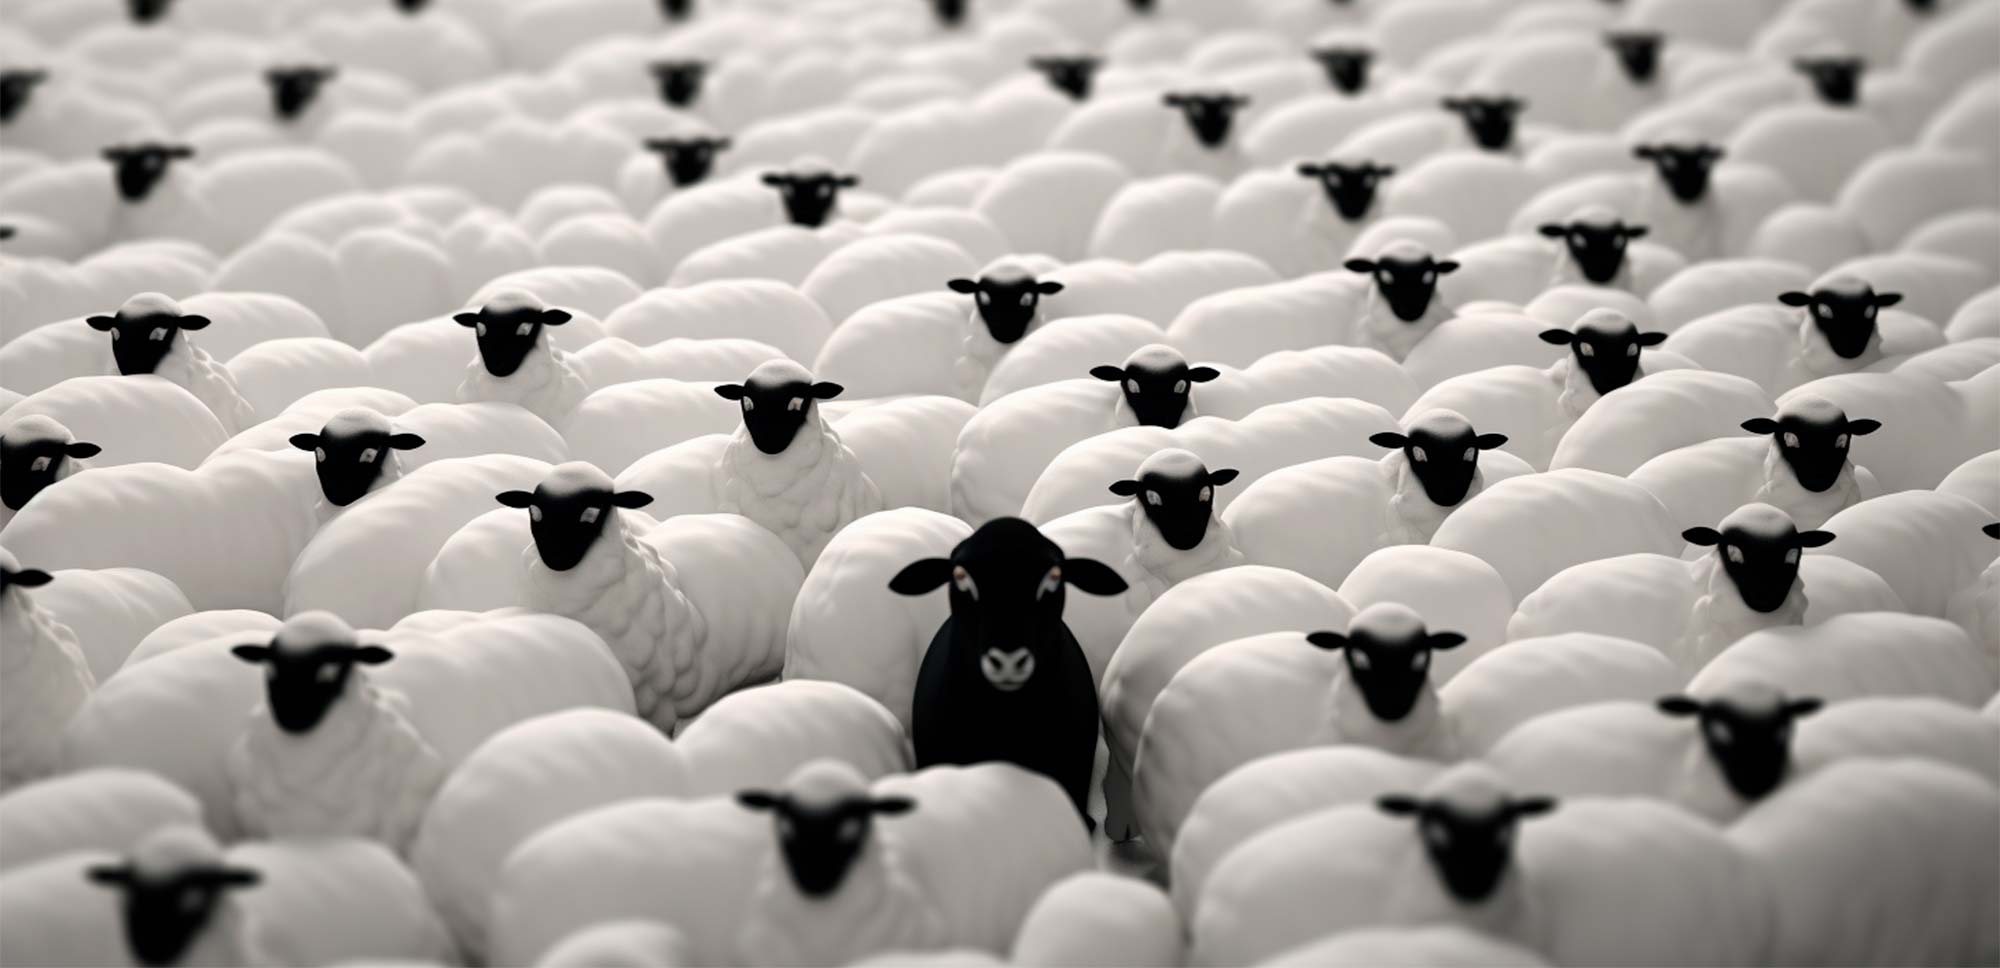 ovejas representan pensamiento grupal